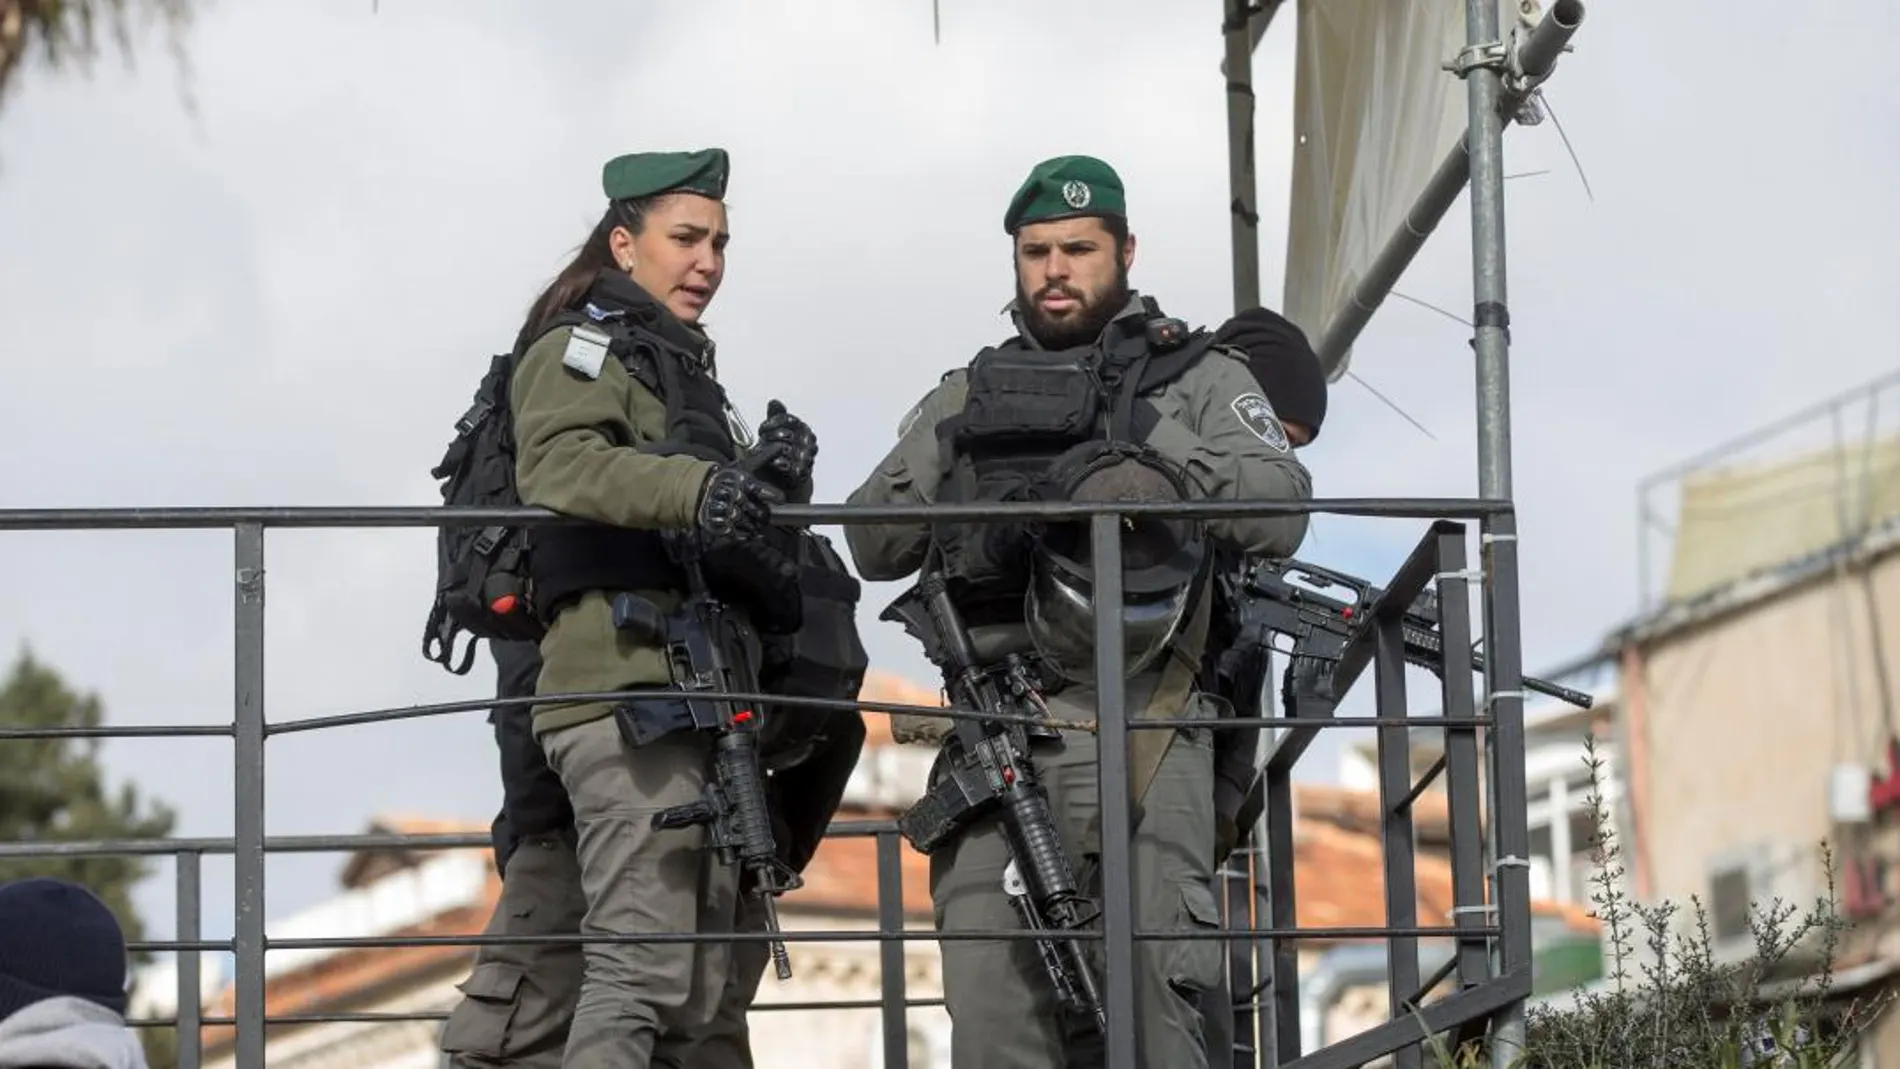 Policías montan guardia junto a la Puerta de Damasco en Jerusalén